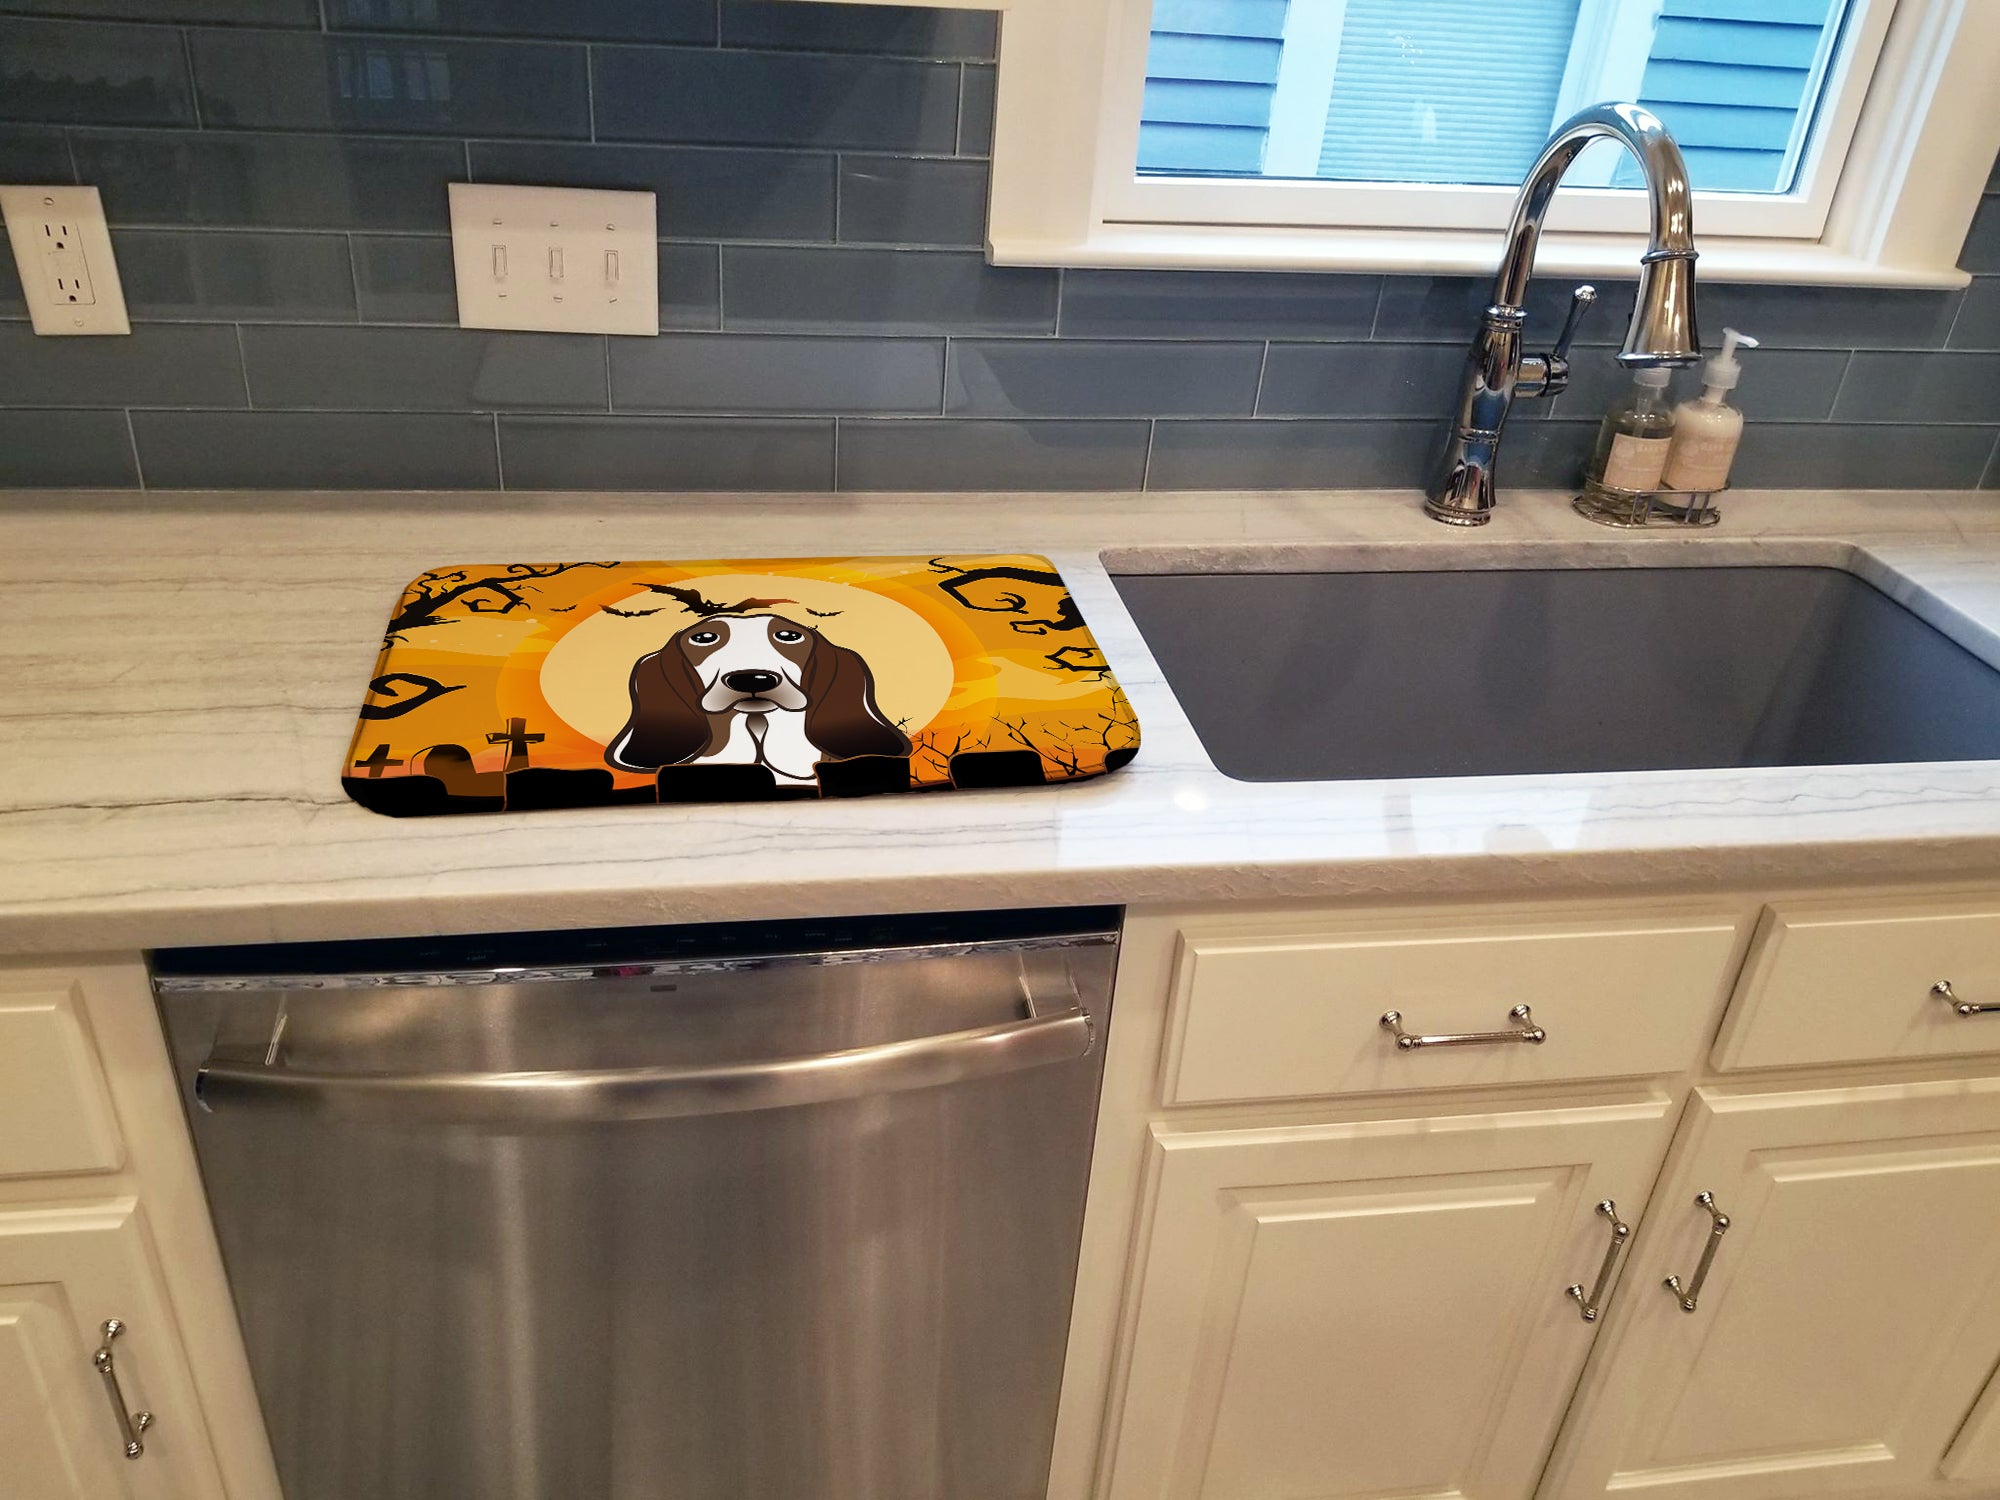 Halloween Basset Hound Dish Drying Mat BB1801DDM